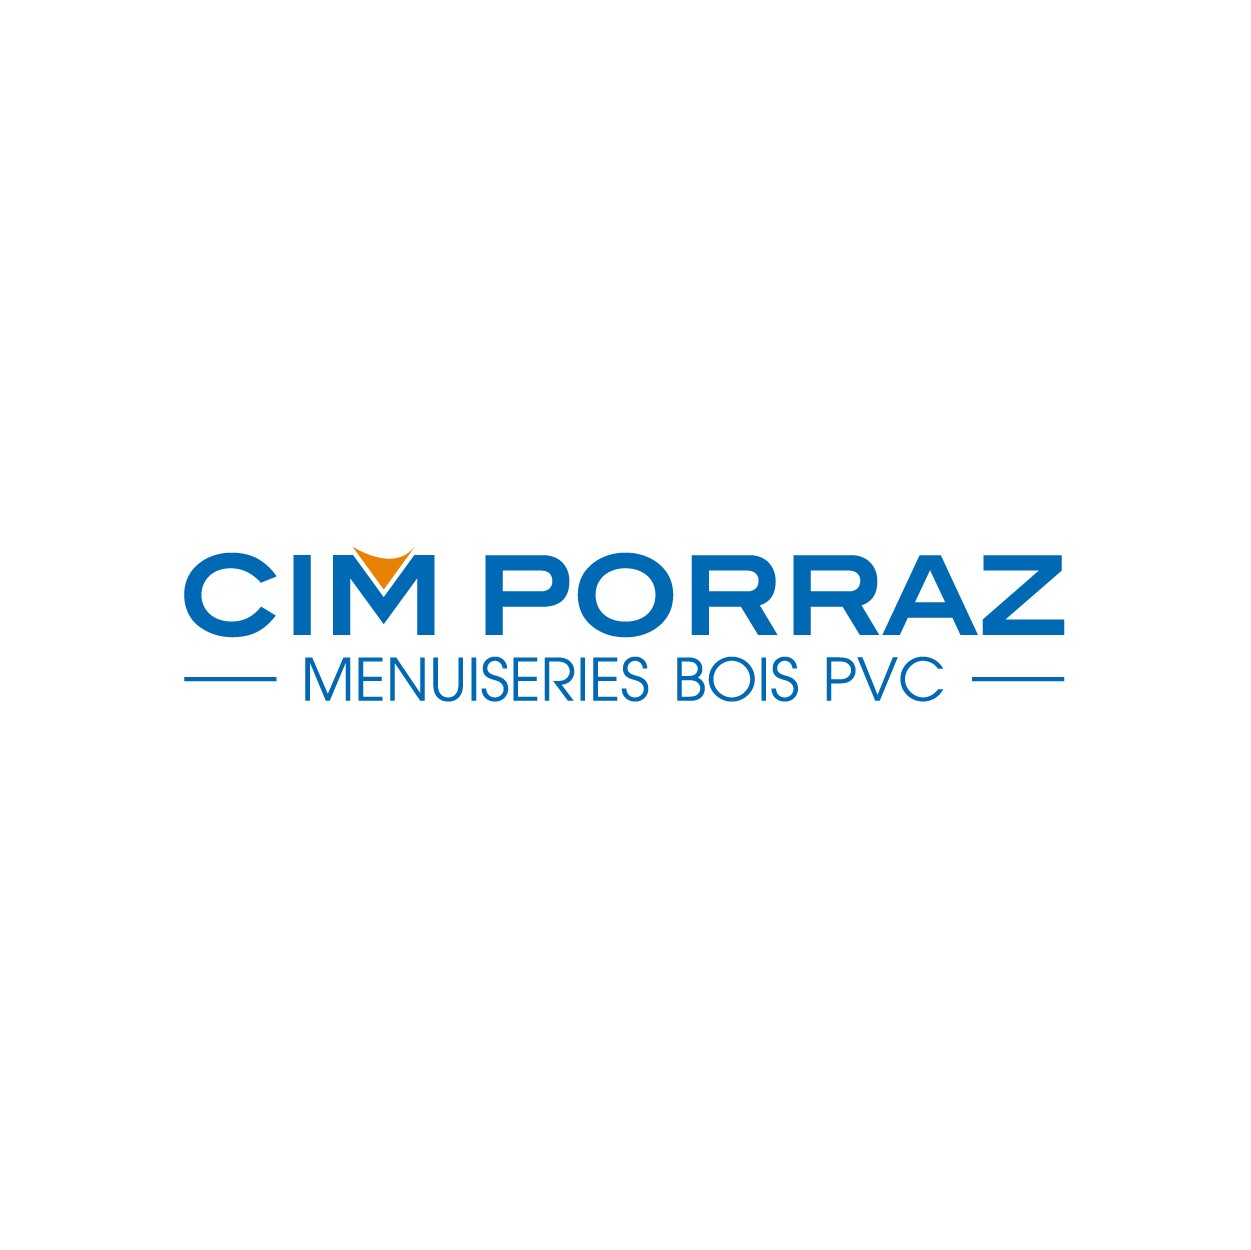 Graphisme publicité et communication pour le fabricants de menuiserie CIM PORRAZ - Savoie